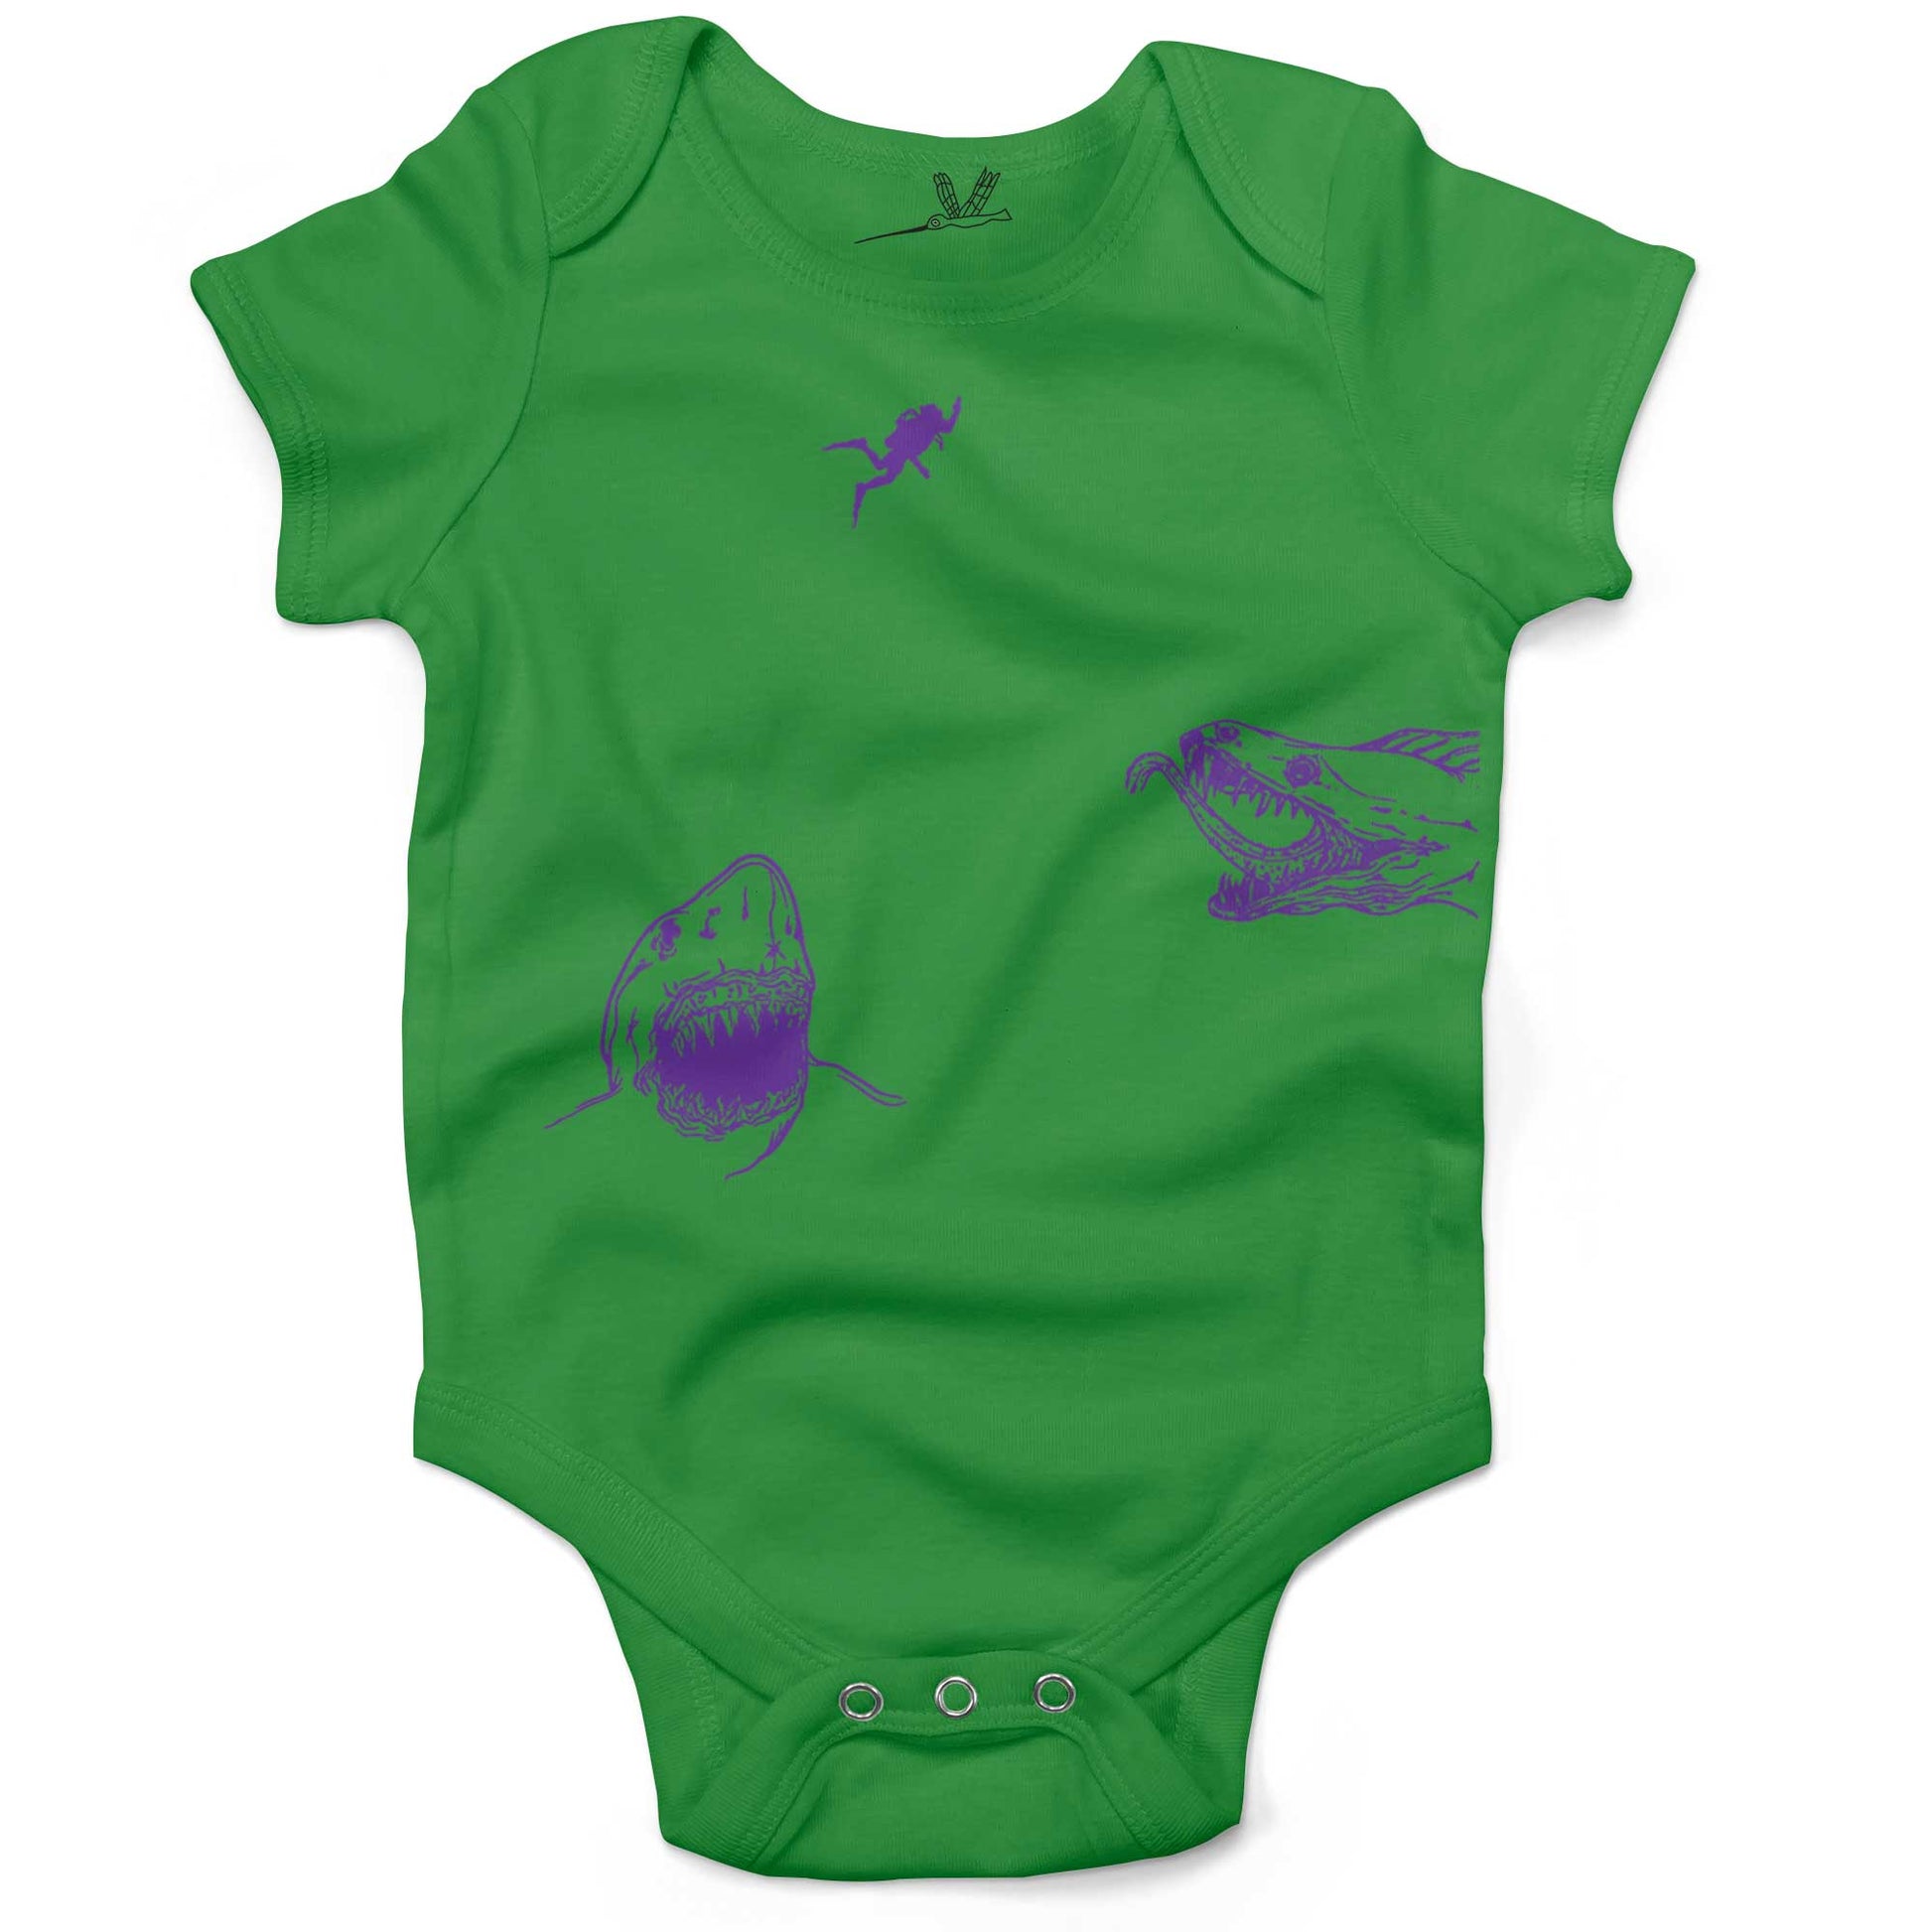 Scuba Diving Infant Bodysuit-Grass Green-3-6 months